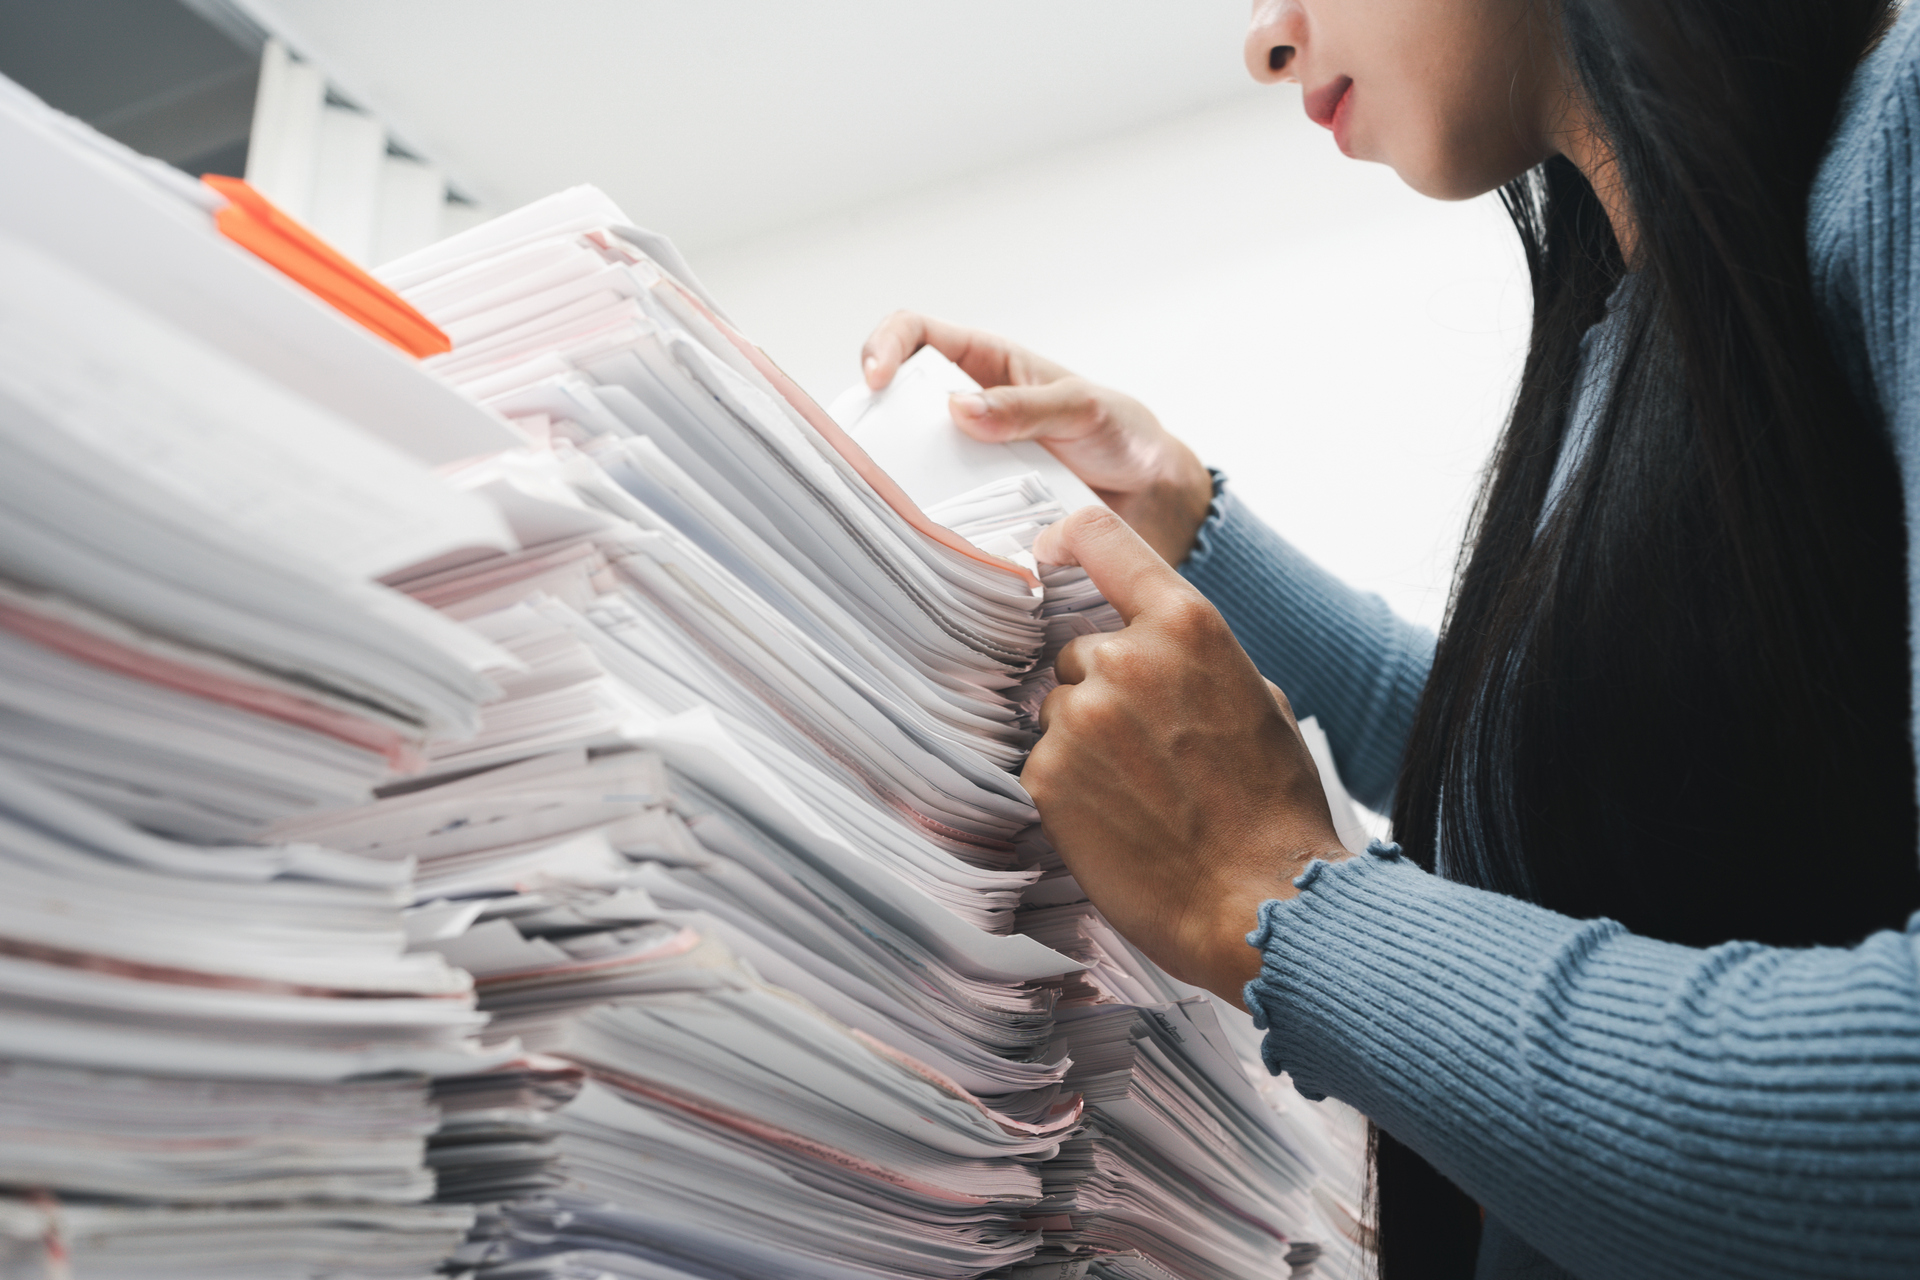 Organizacja dokumentów w domu – jak to dobrze zrobić?